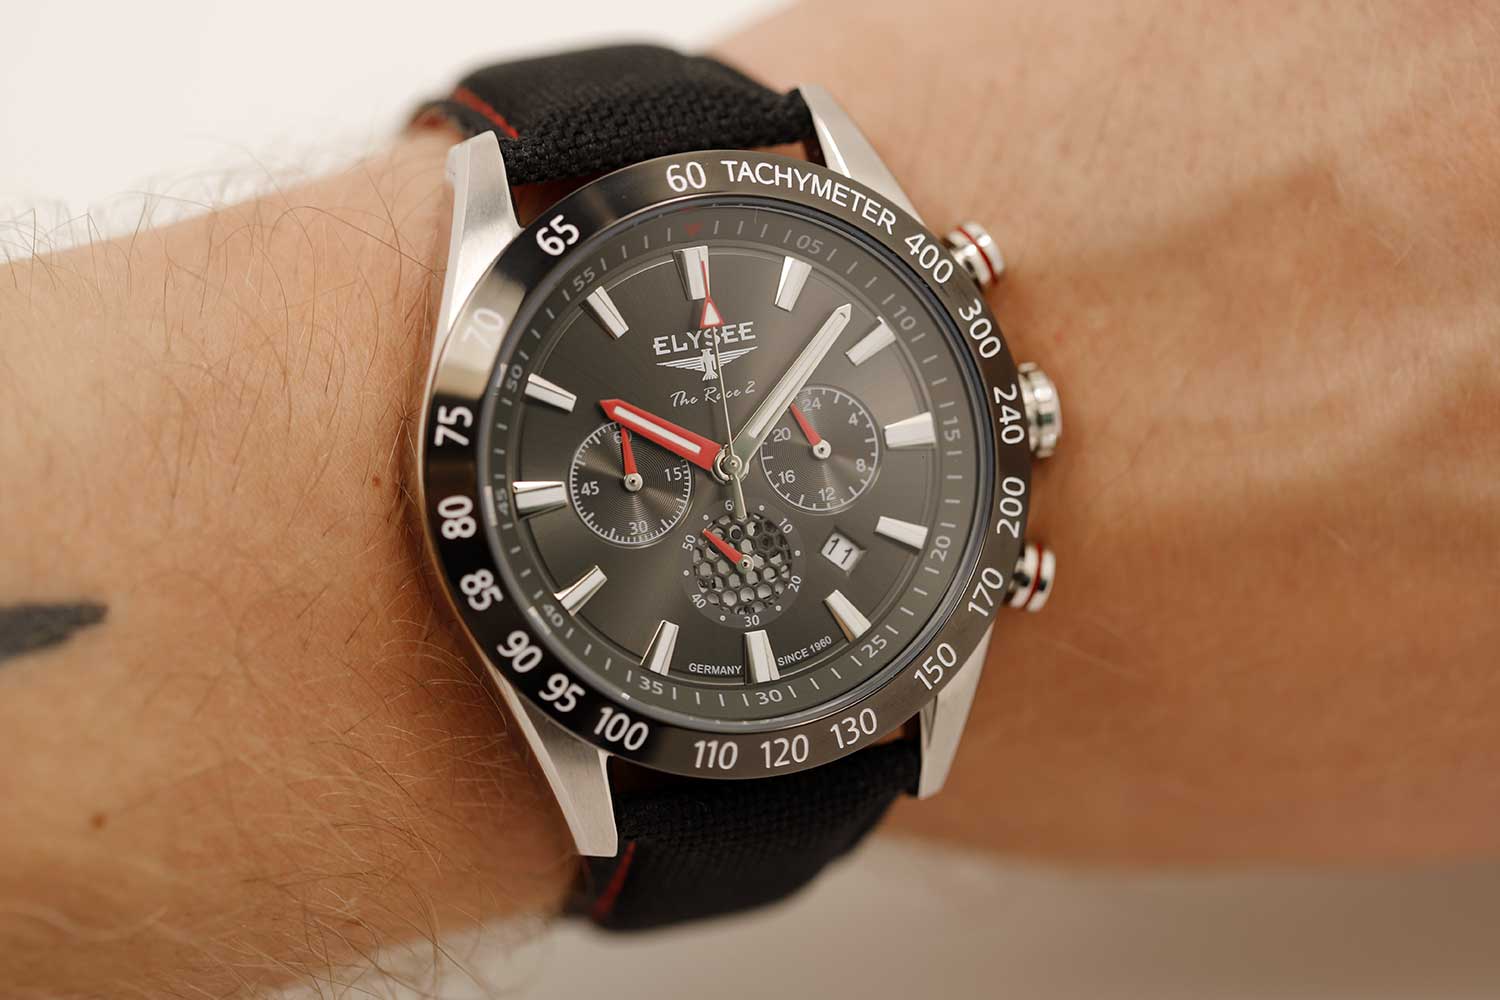 Наручные часы Elysee 80404 — фото, инструкция, интернет-магазине в характеристики, купить лучшей описание по цене, AllTime.ru